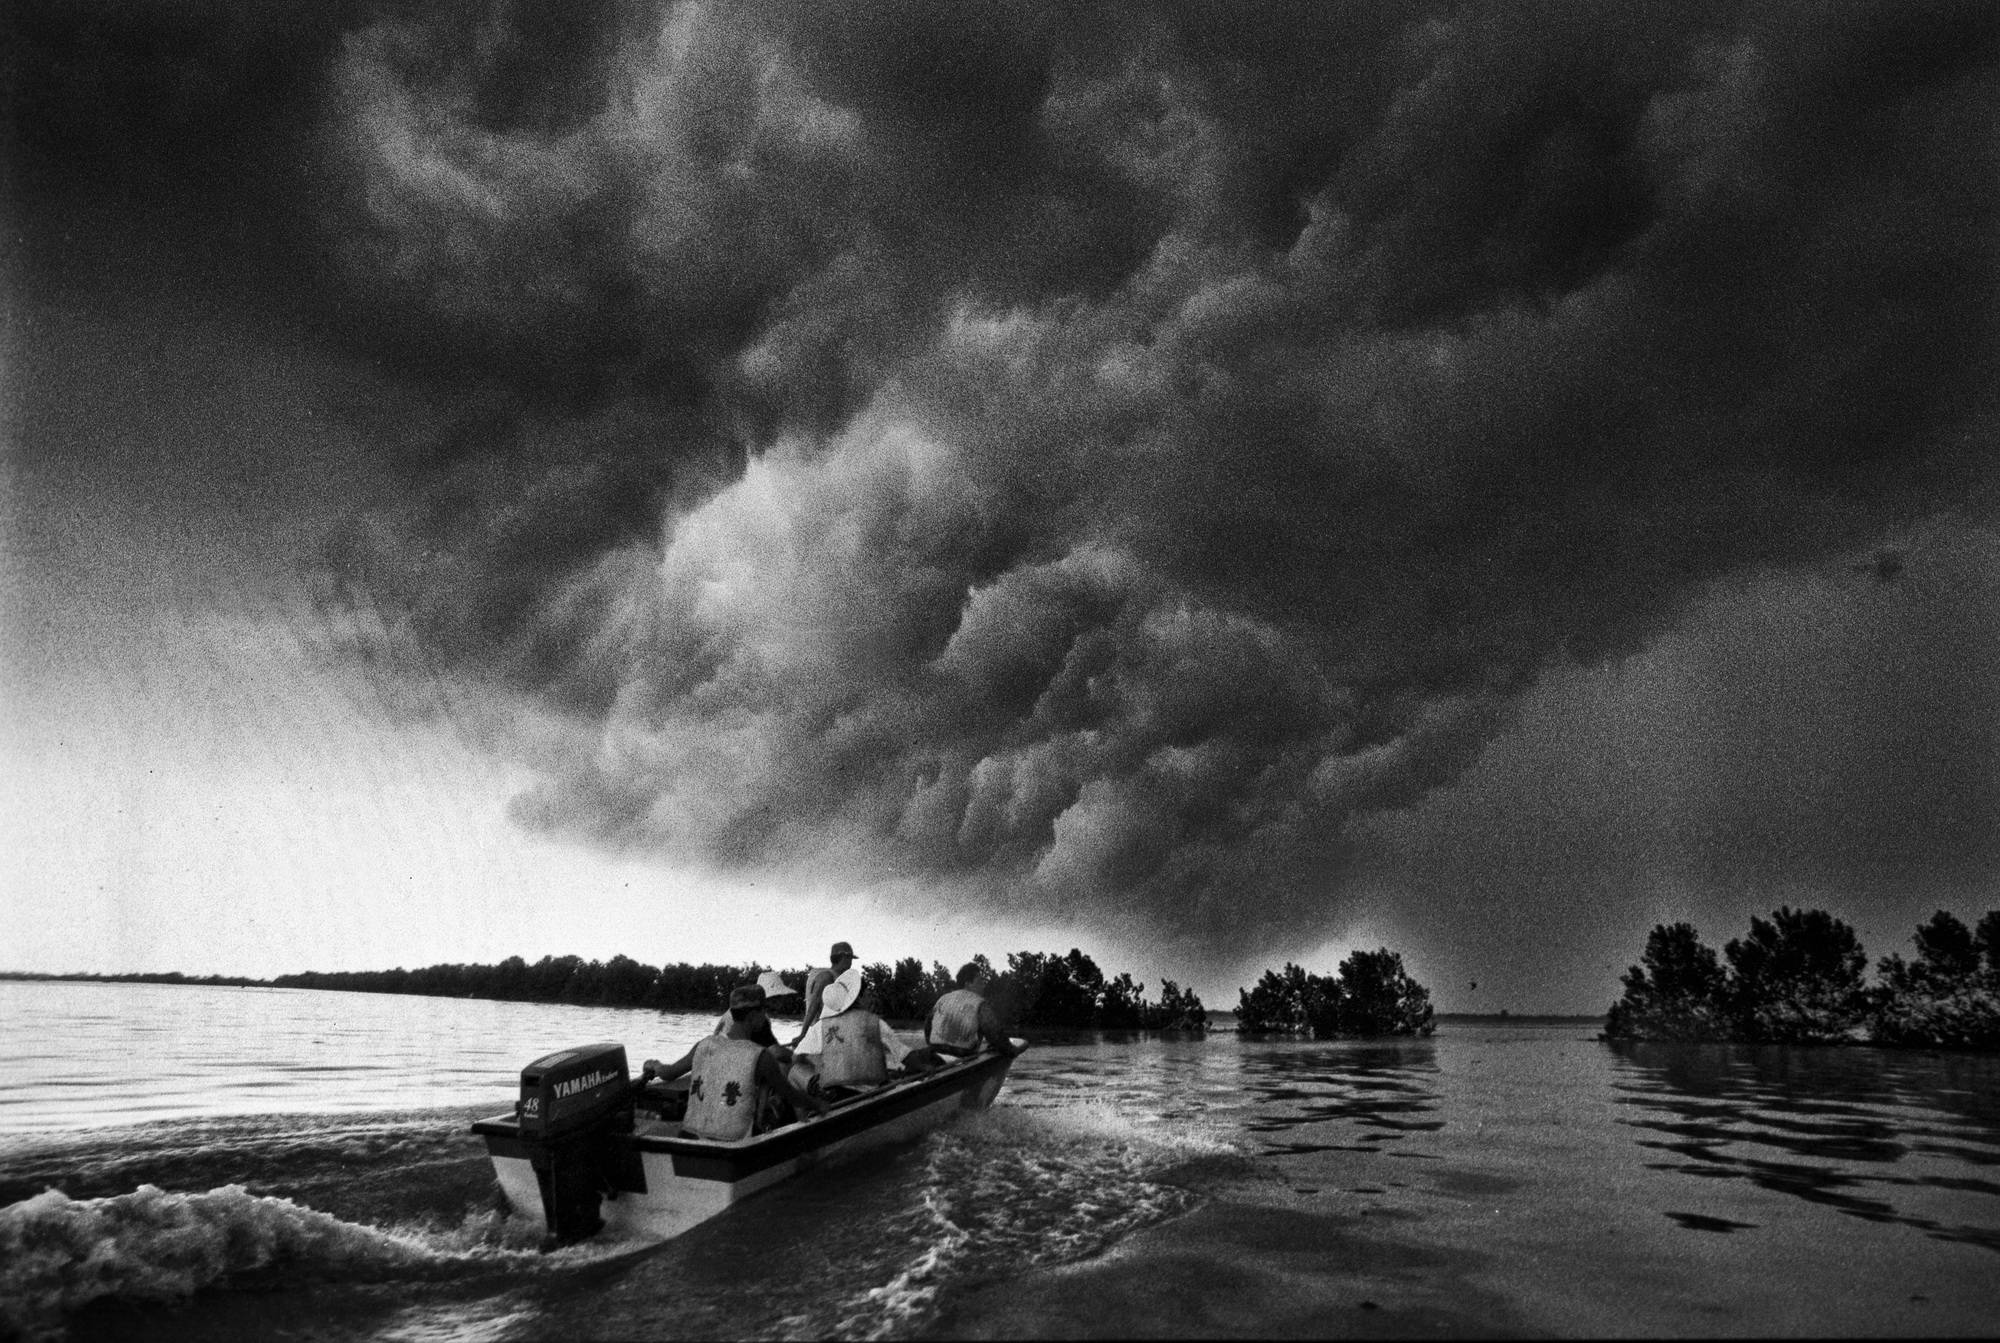 1960年洪水图片